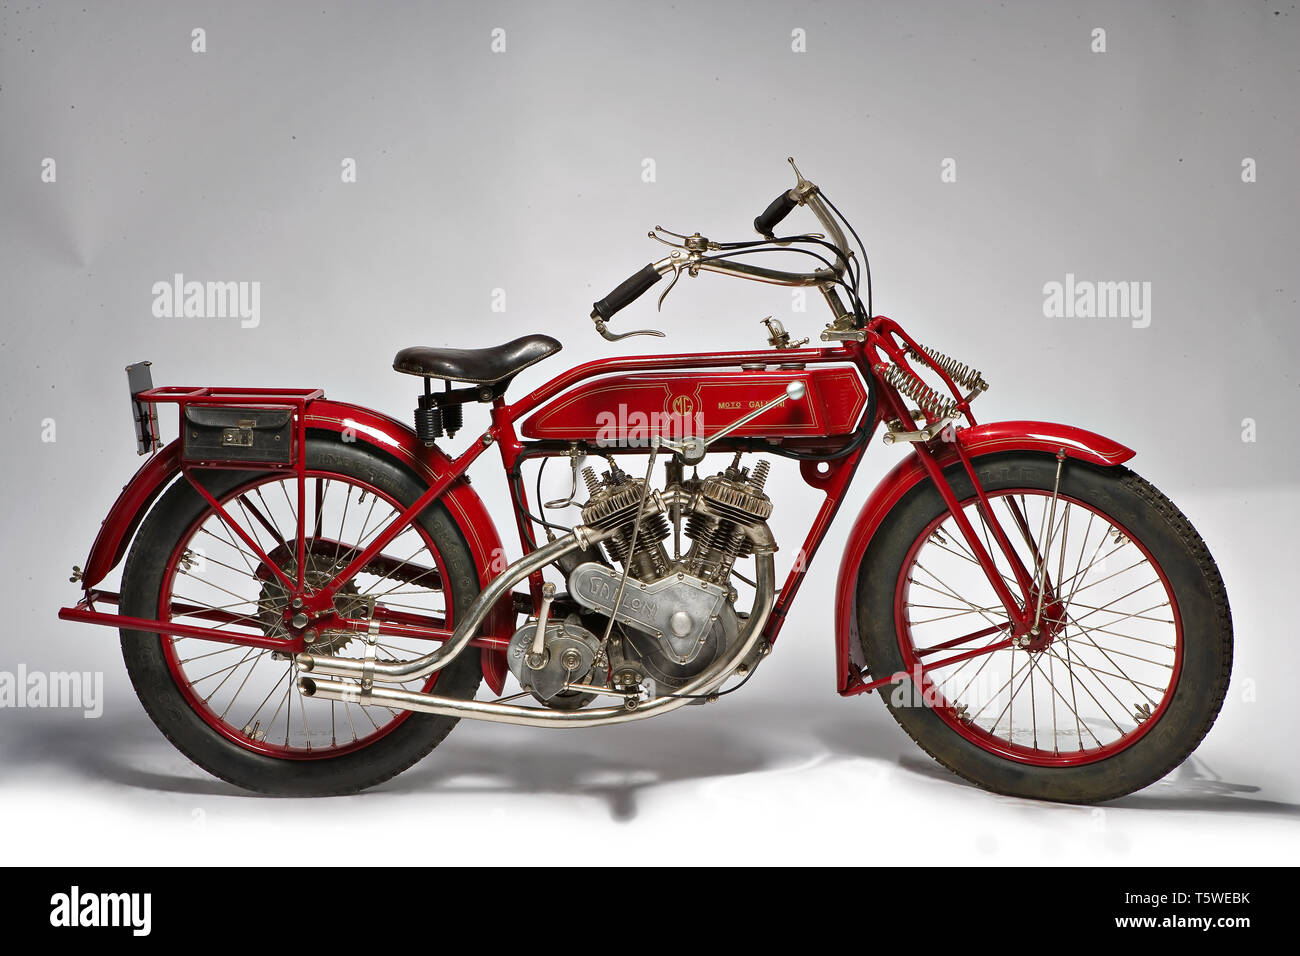 Moto d'Epoca Galloni 750 SS fabbrica: MG - Moto Galloni modello: 750 SS fabbricata en: Italia - Borgomanero anno di costruzione: 1920-21 Foto de stock